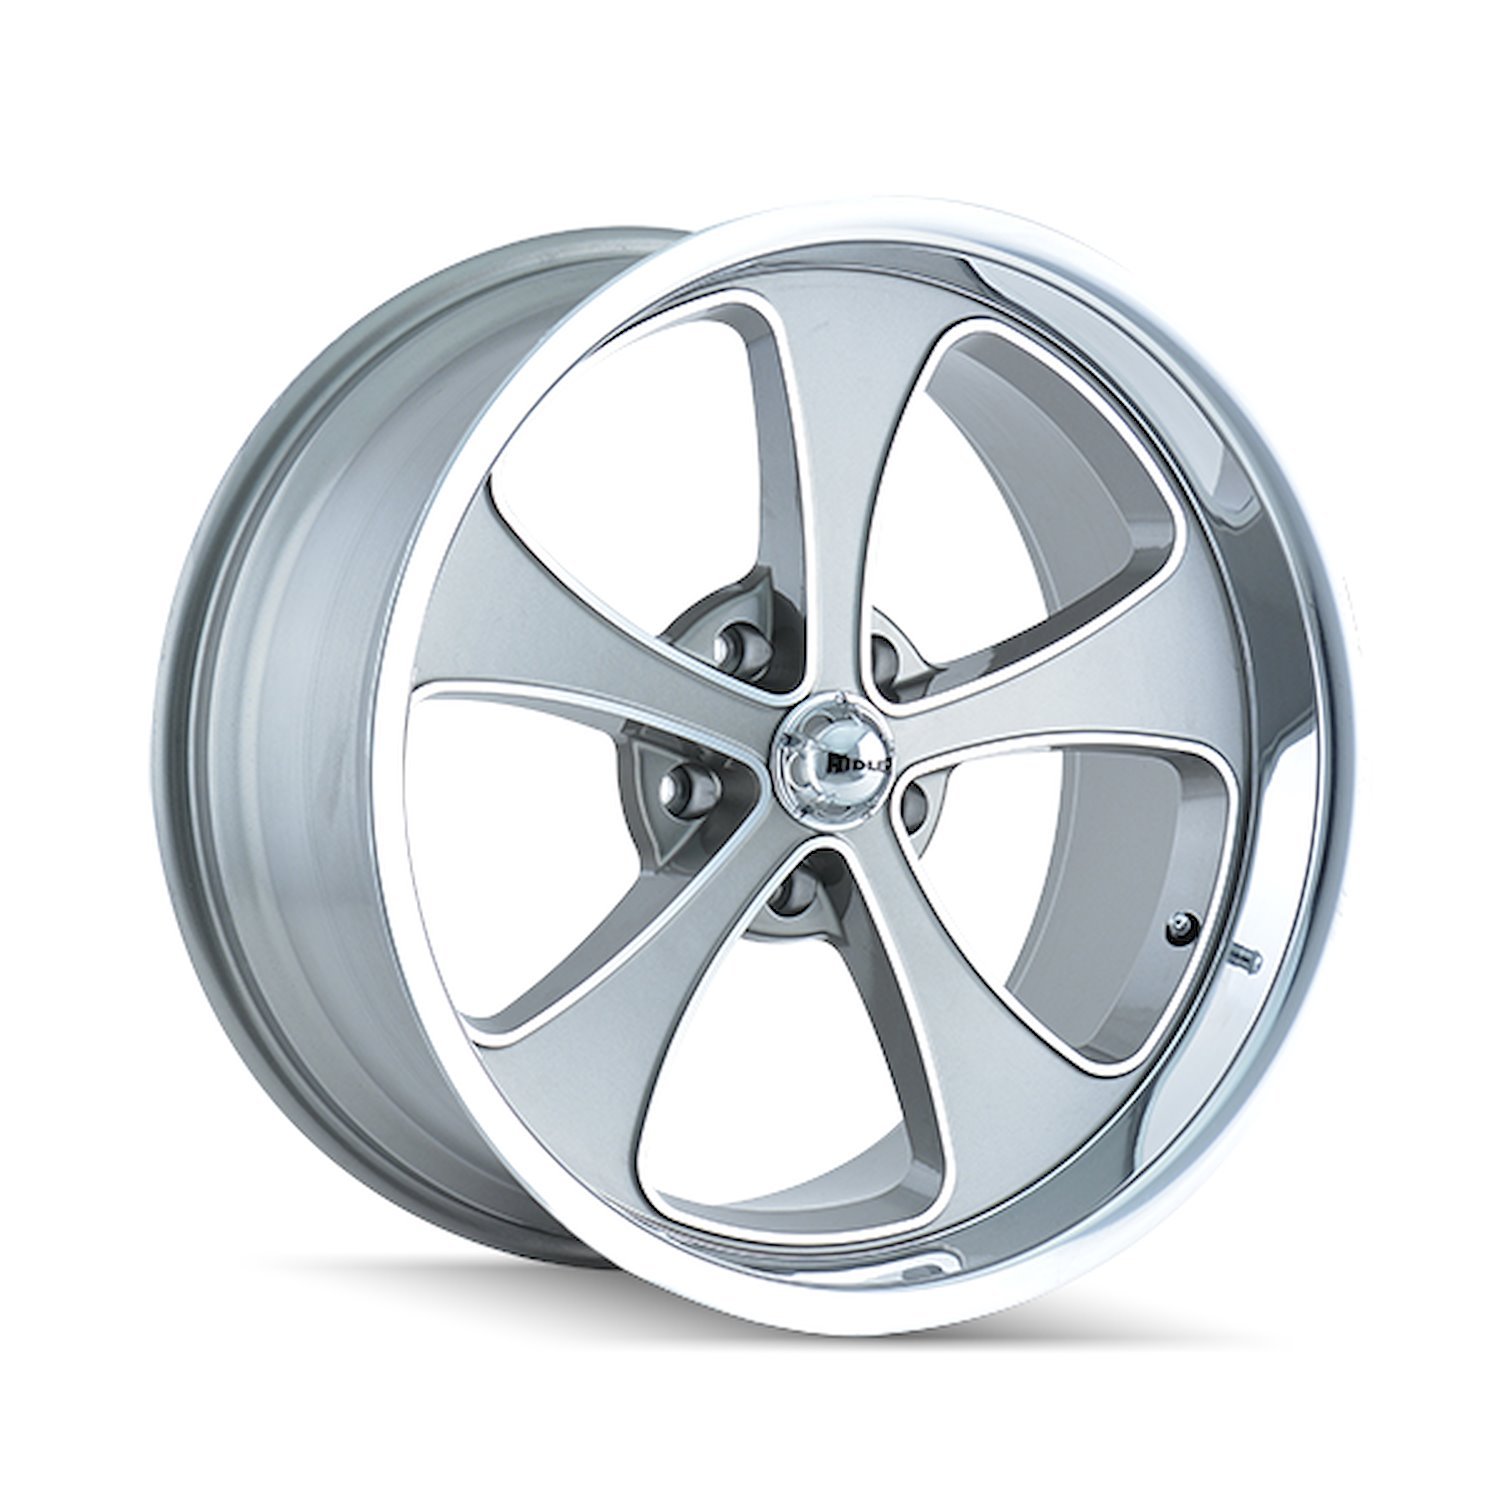 645-8885GP 645-Series Wheel [Size: 18" x 8"] Gloss Grey Machined/Polished Finish